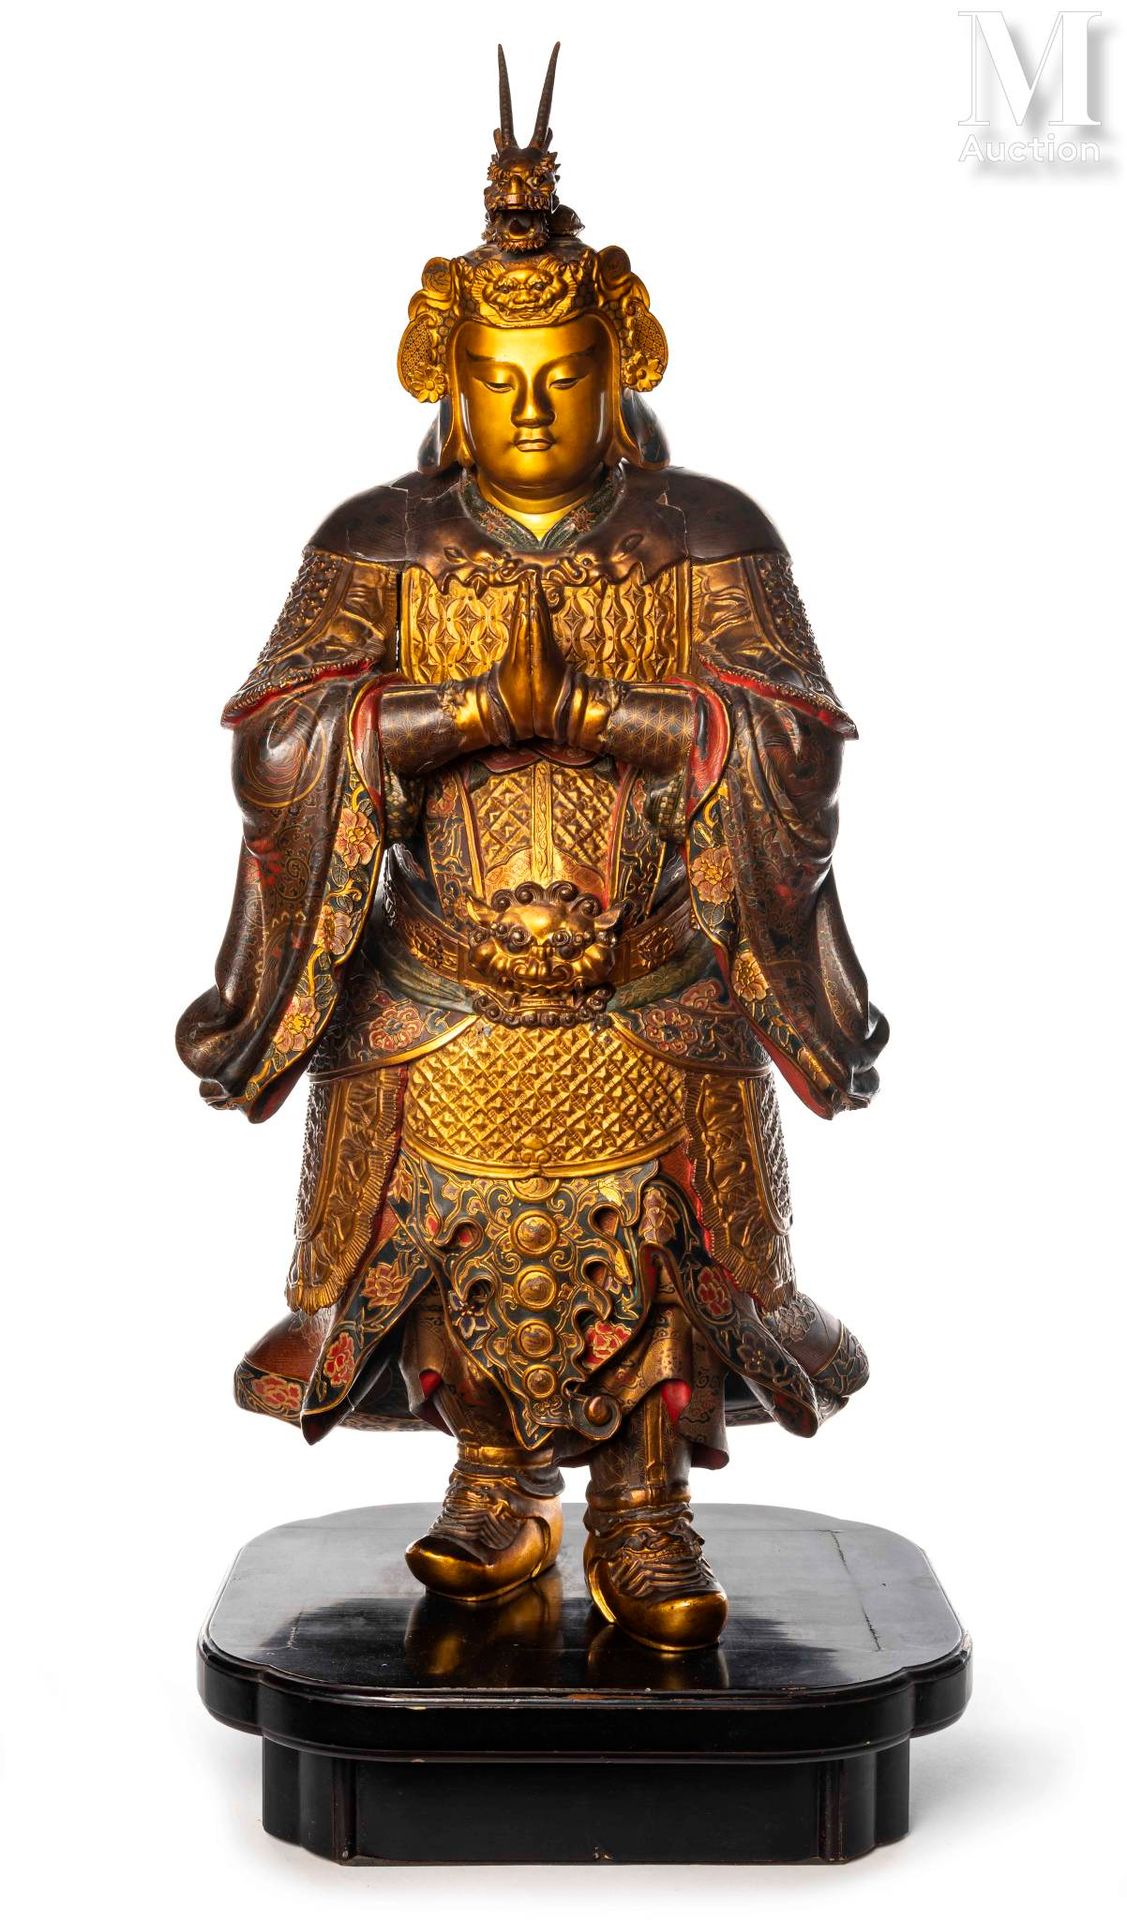 JAPON, XIXe siècle Escultura de madera lacada y dorada

Representa al dios Idate&hellip;